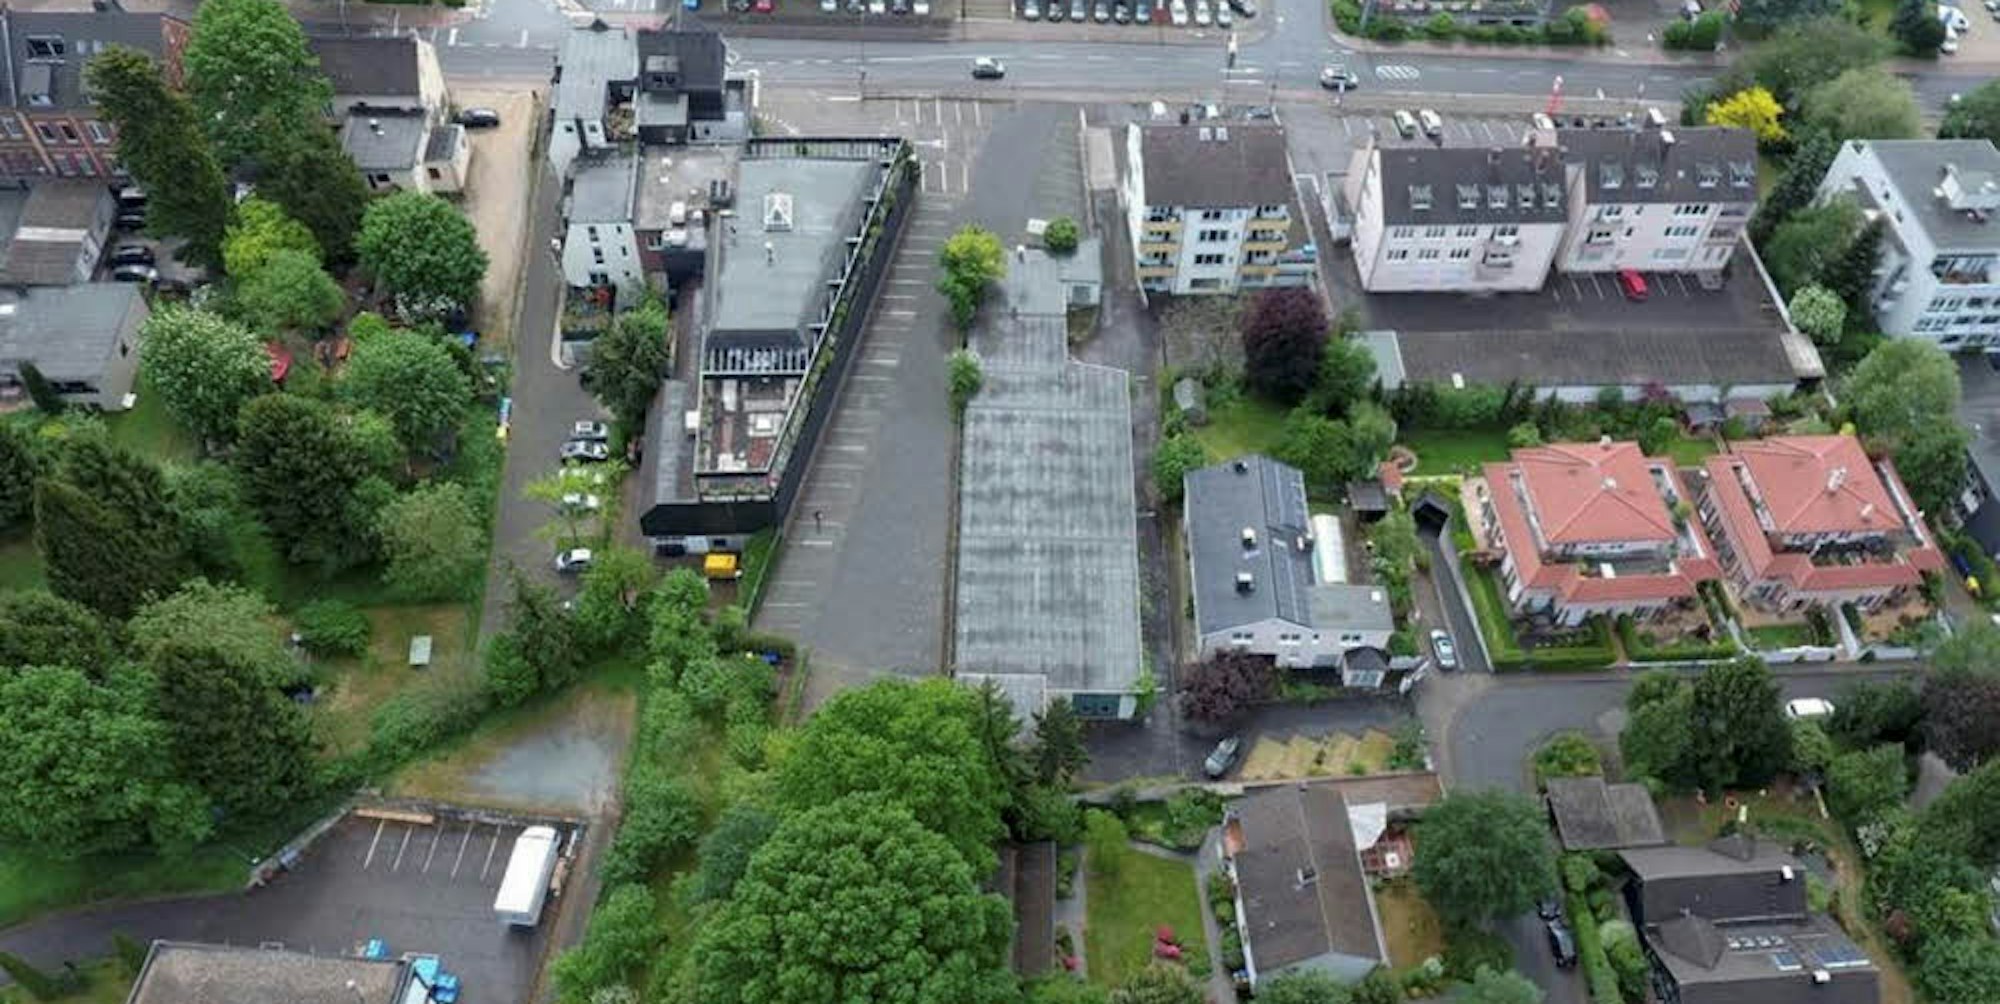 Diese Lagerhalle (Mitte) will die Stadt kaufen, weil sie auf der alten Bahndammtrasse liegt. Links von der Halle befindet sich der Edeka-Supermarkt, gegenüber das Autohaus Opel Gieraths.